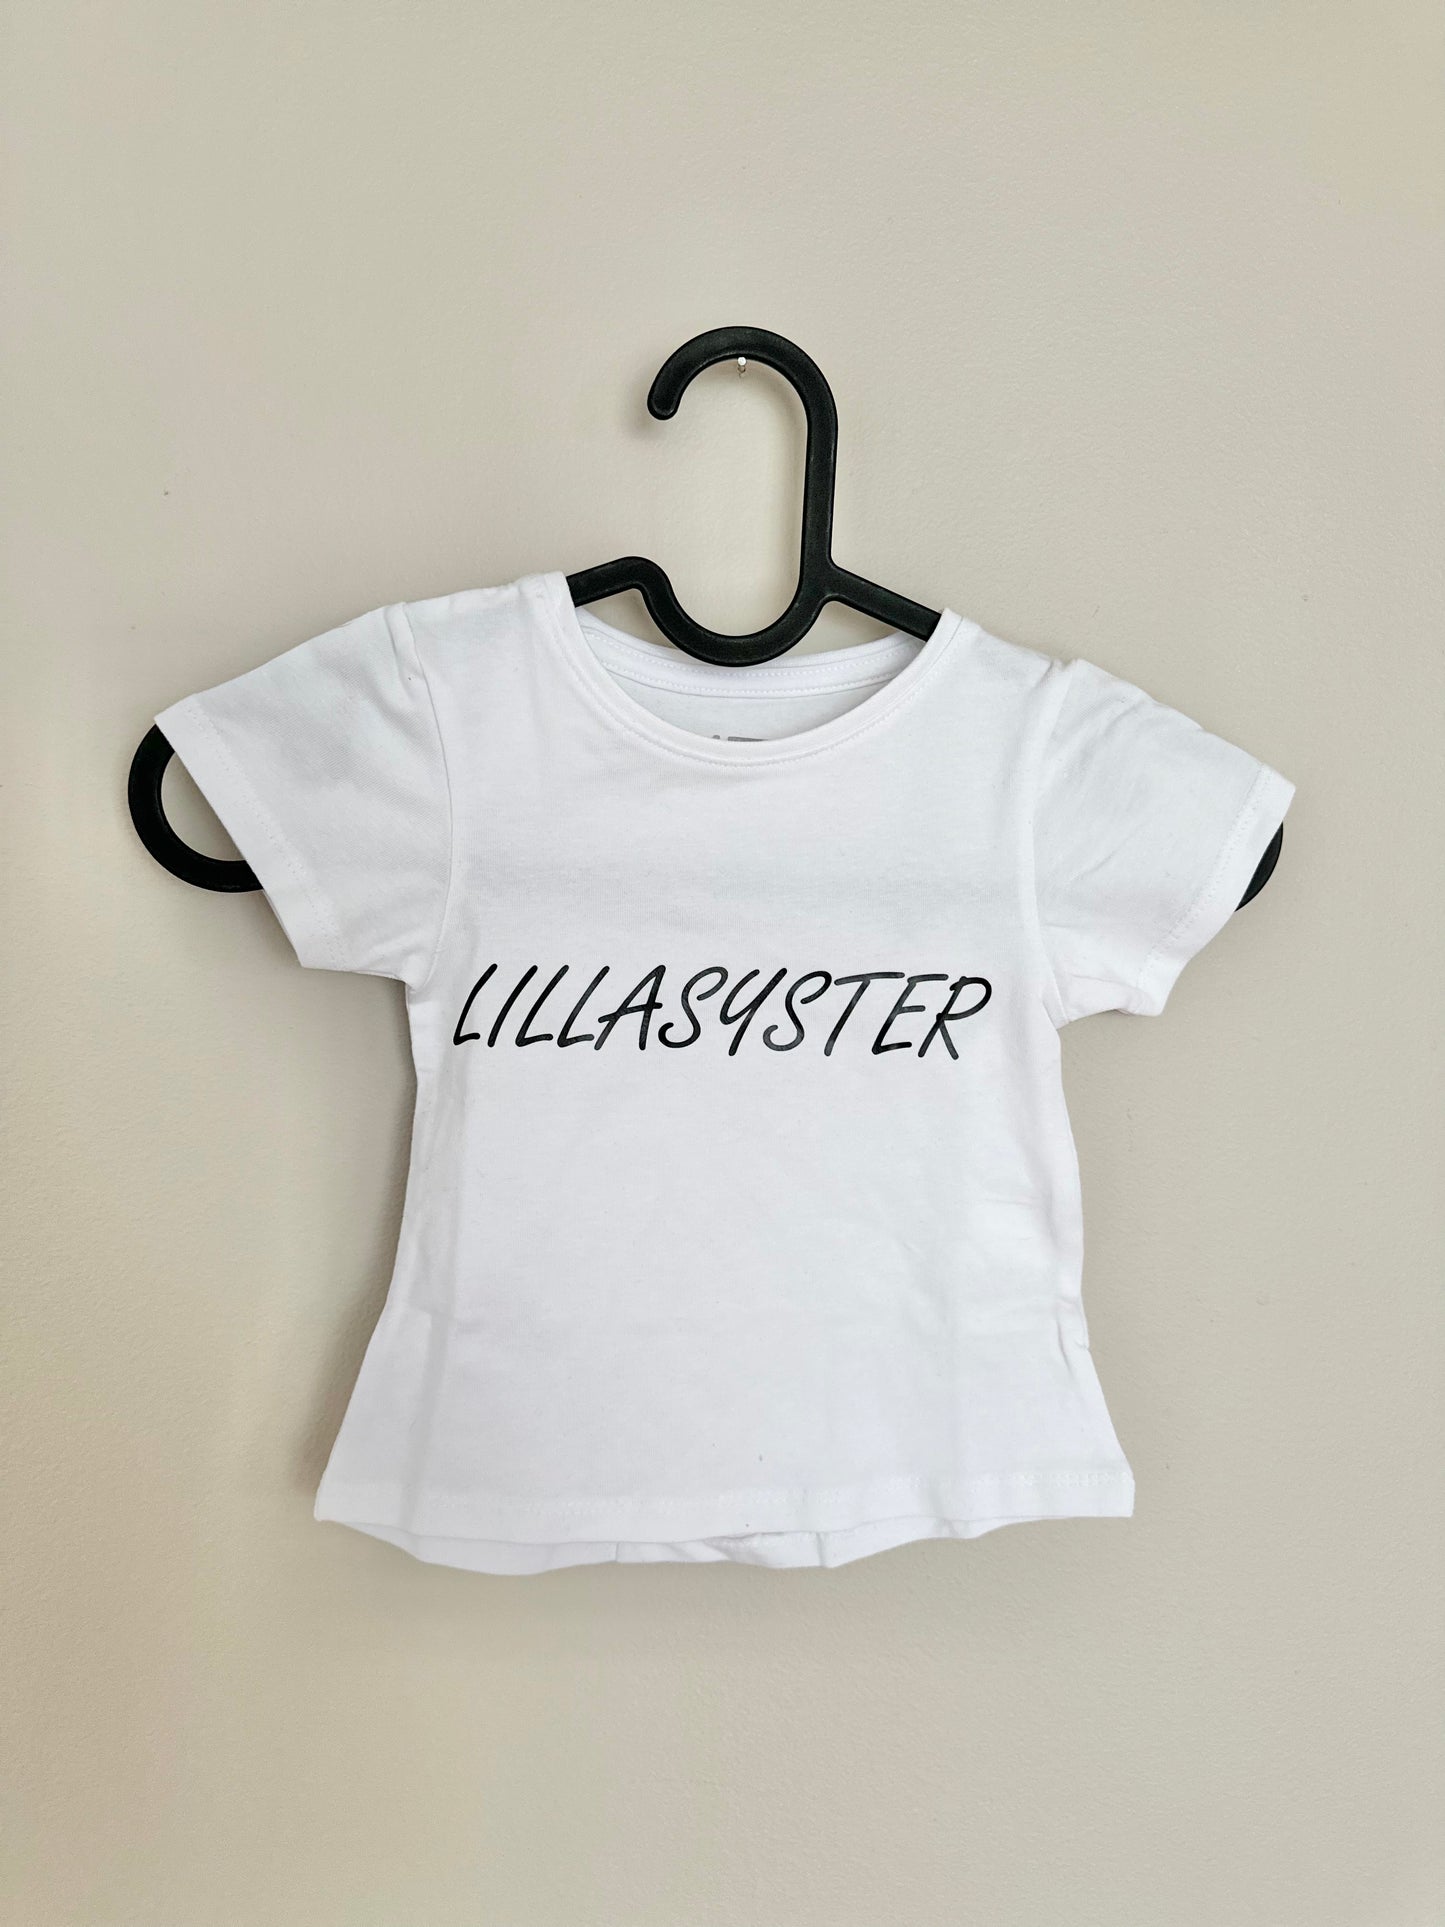 Lillasyster/Lillebror